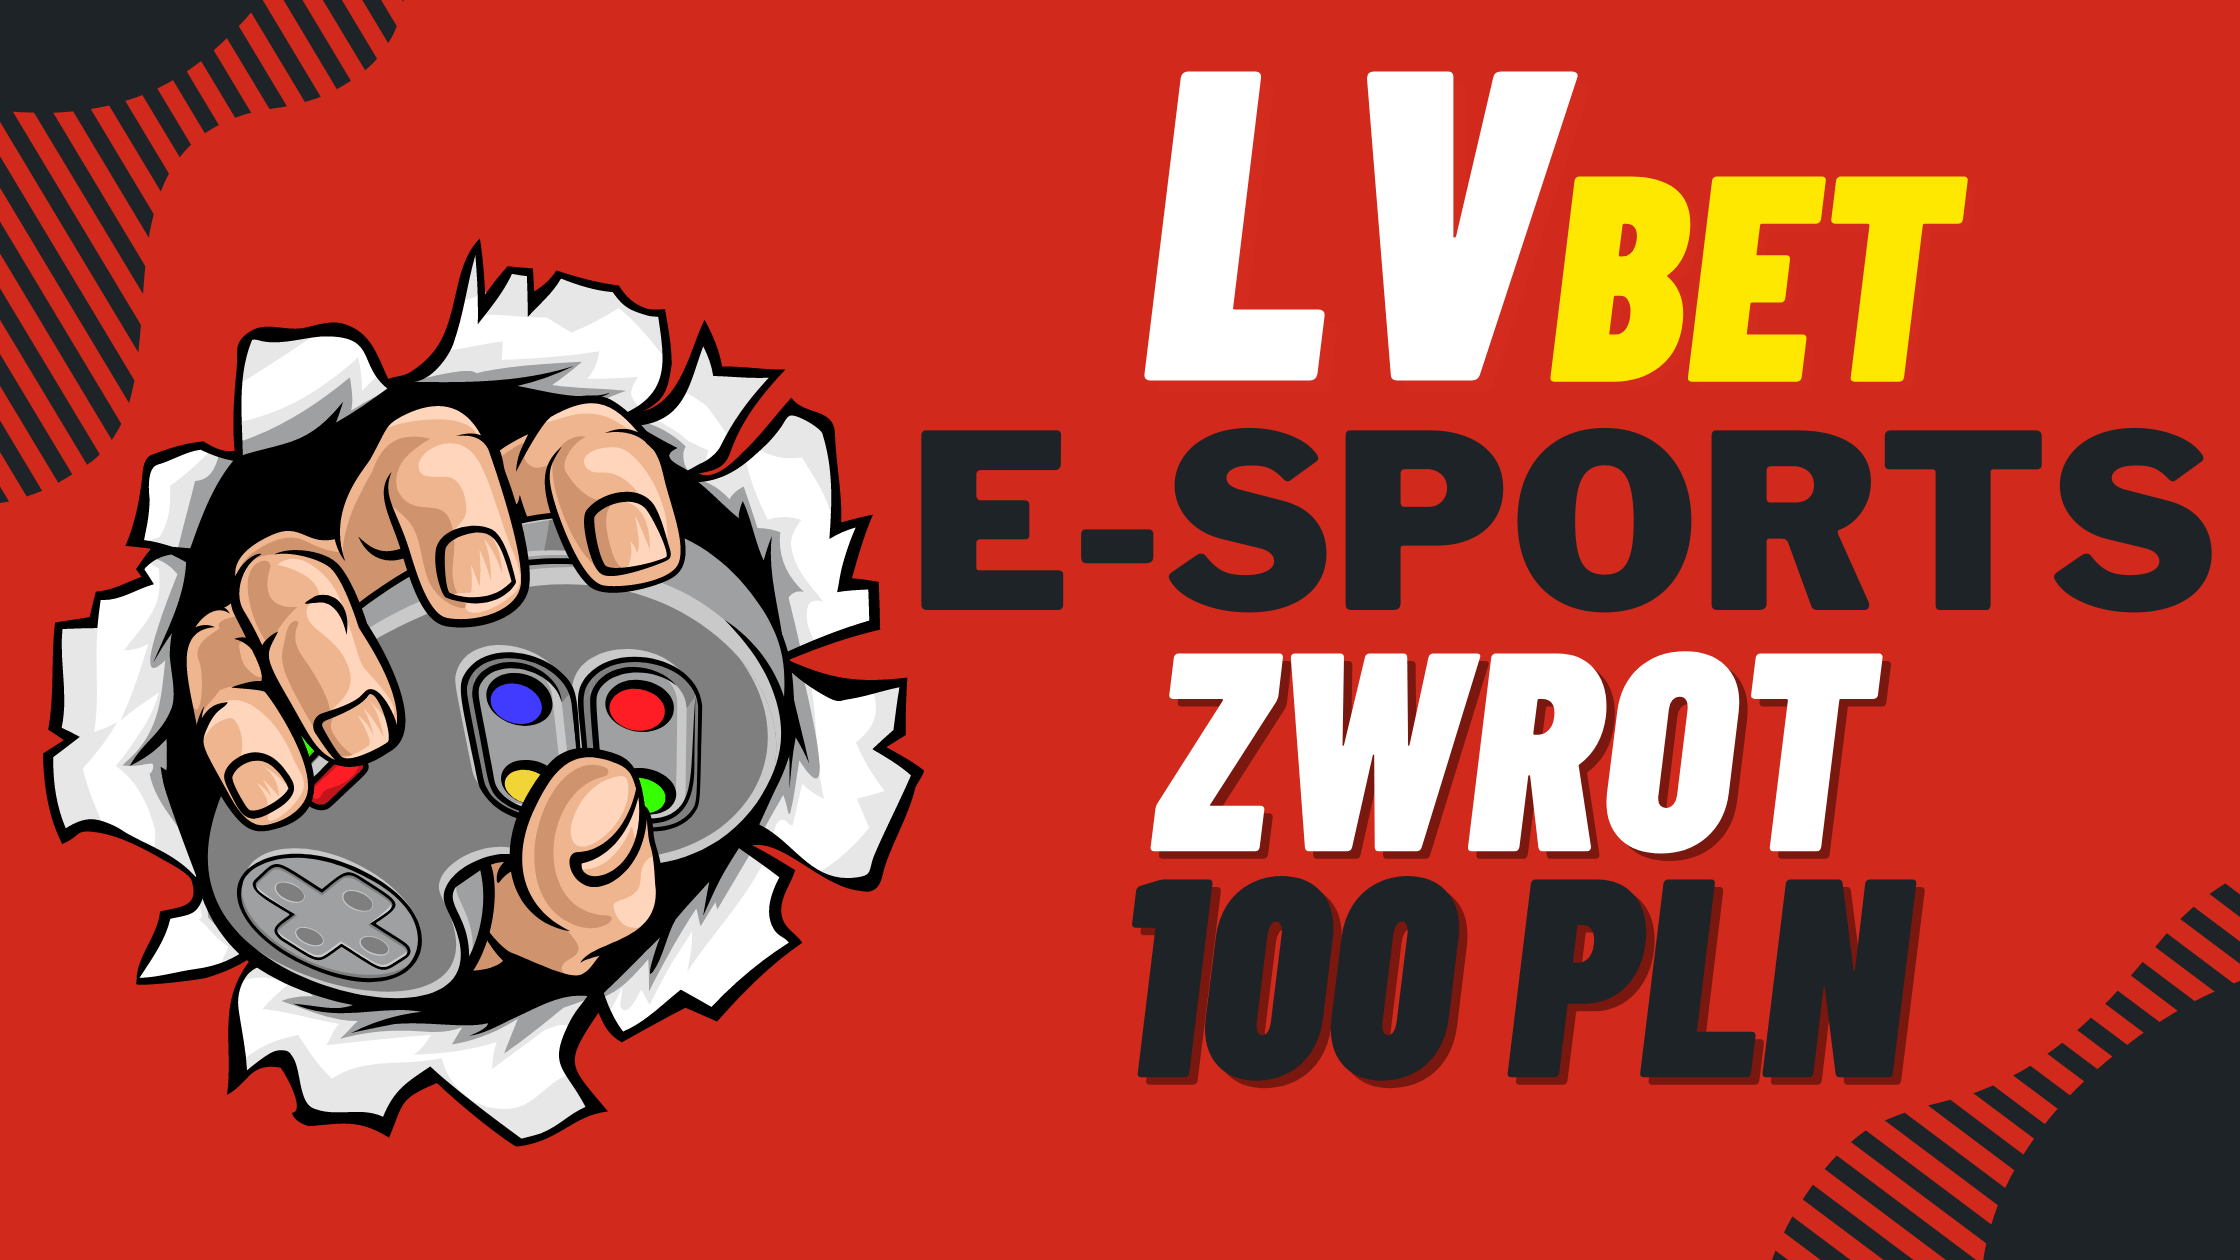 Legalny polski bukmacher LVBet e-sports zwrot 100 PLN